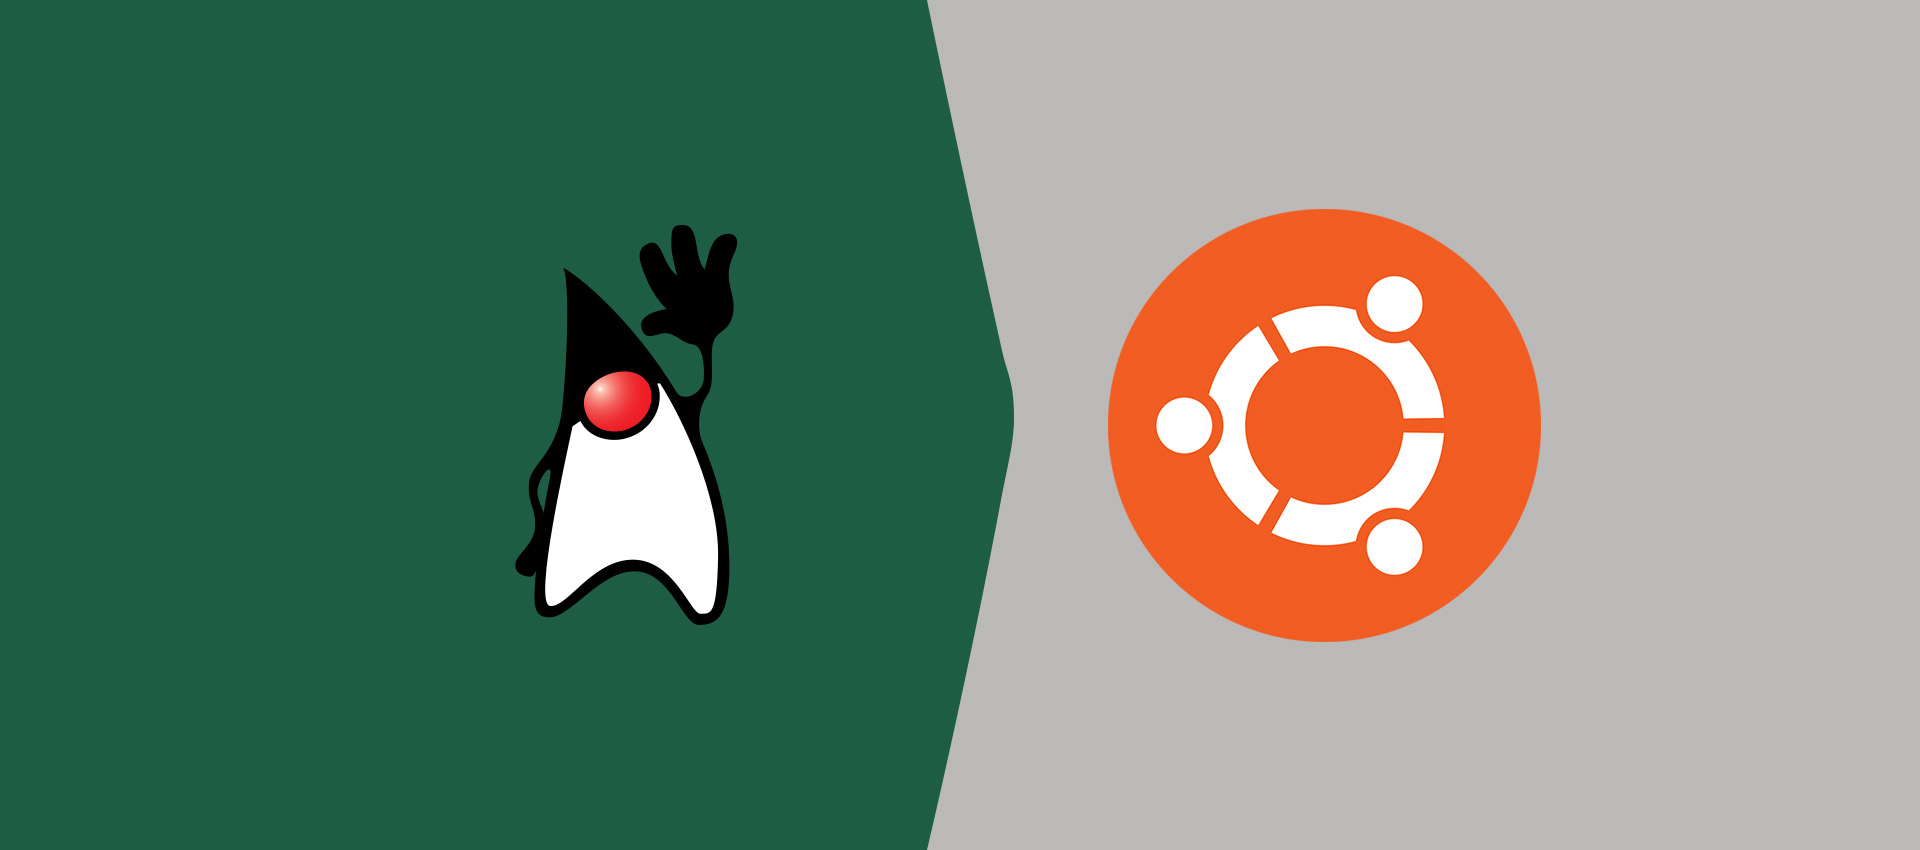 How To Install OpenJDK 14 On Ubuntu